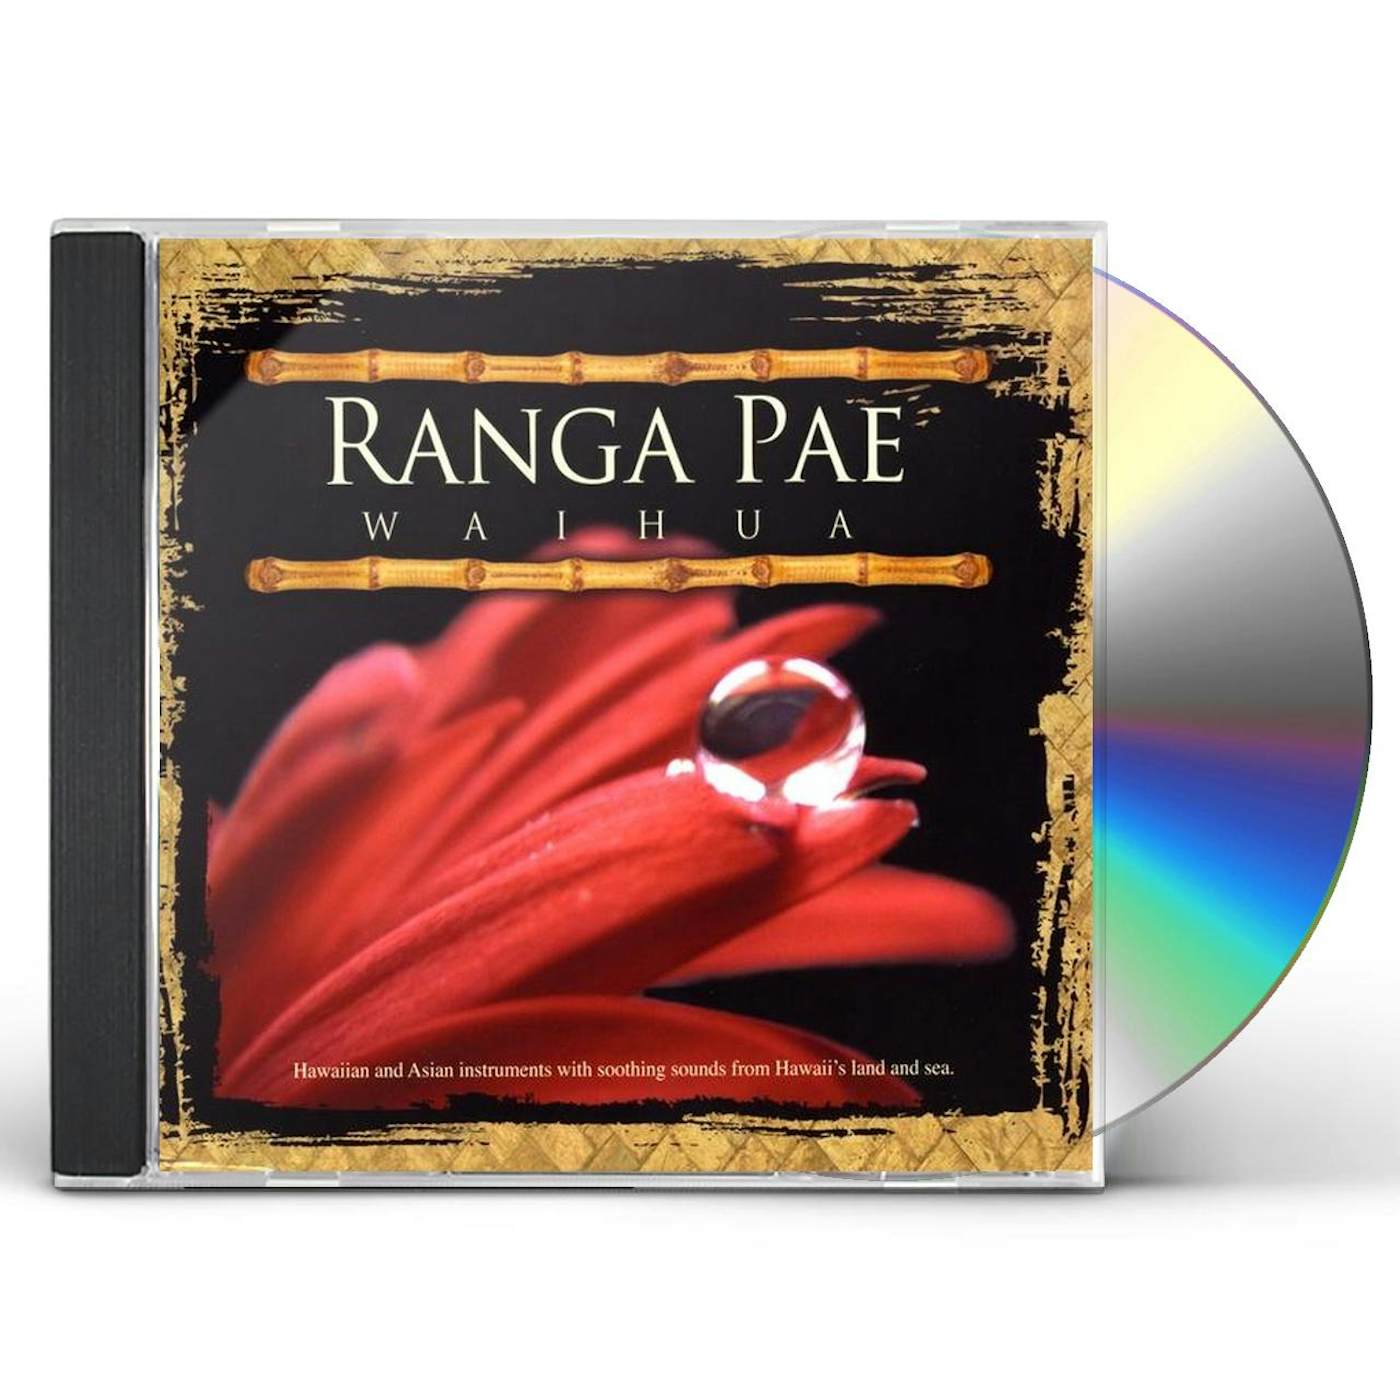 Ranga Pae WAIHUA CD